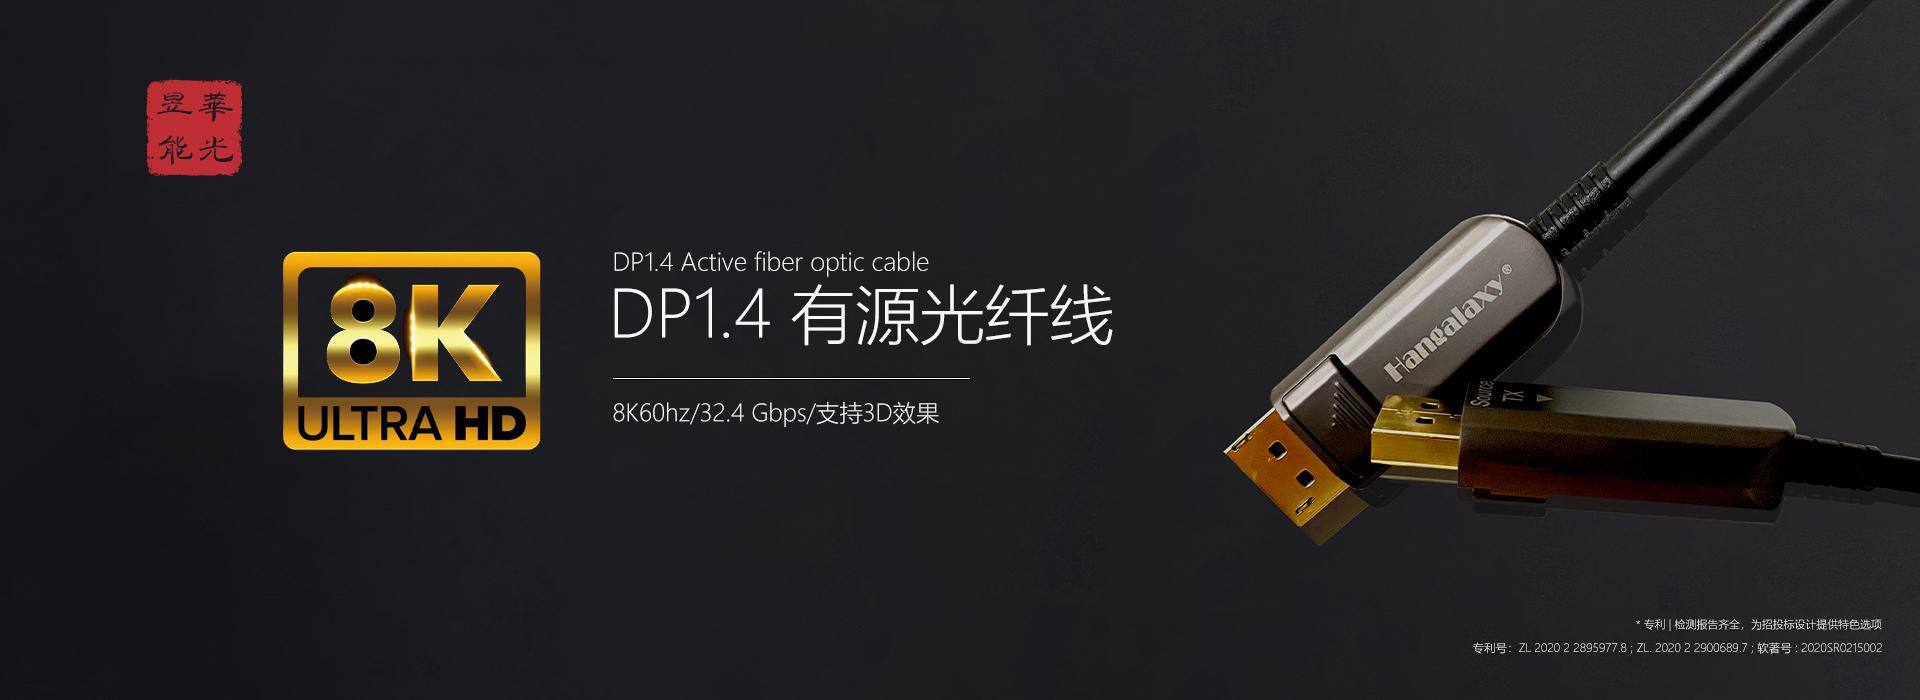 DP1.4